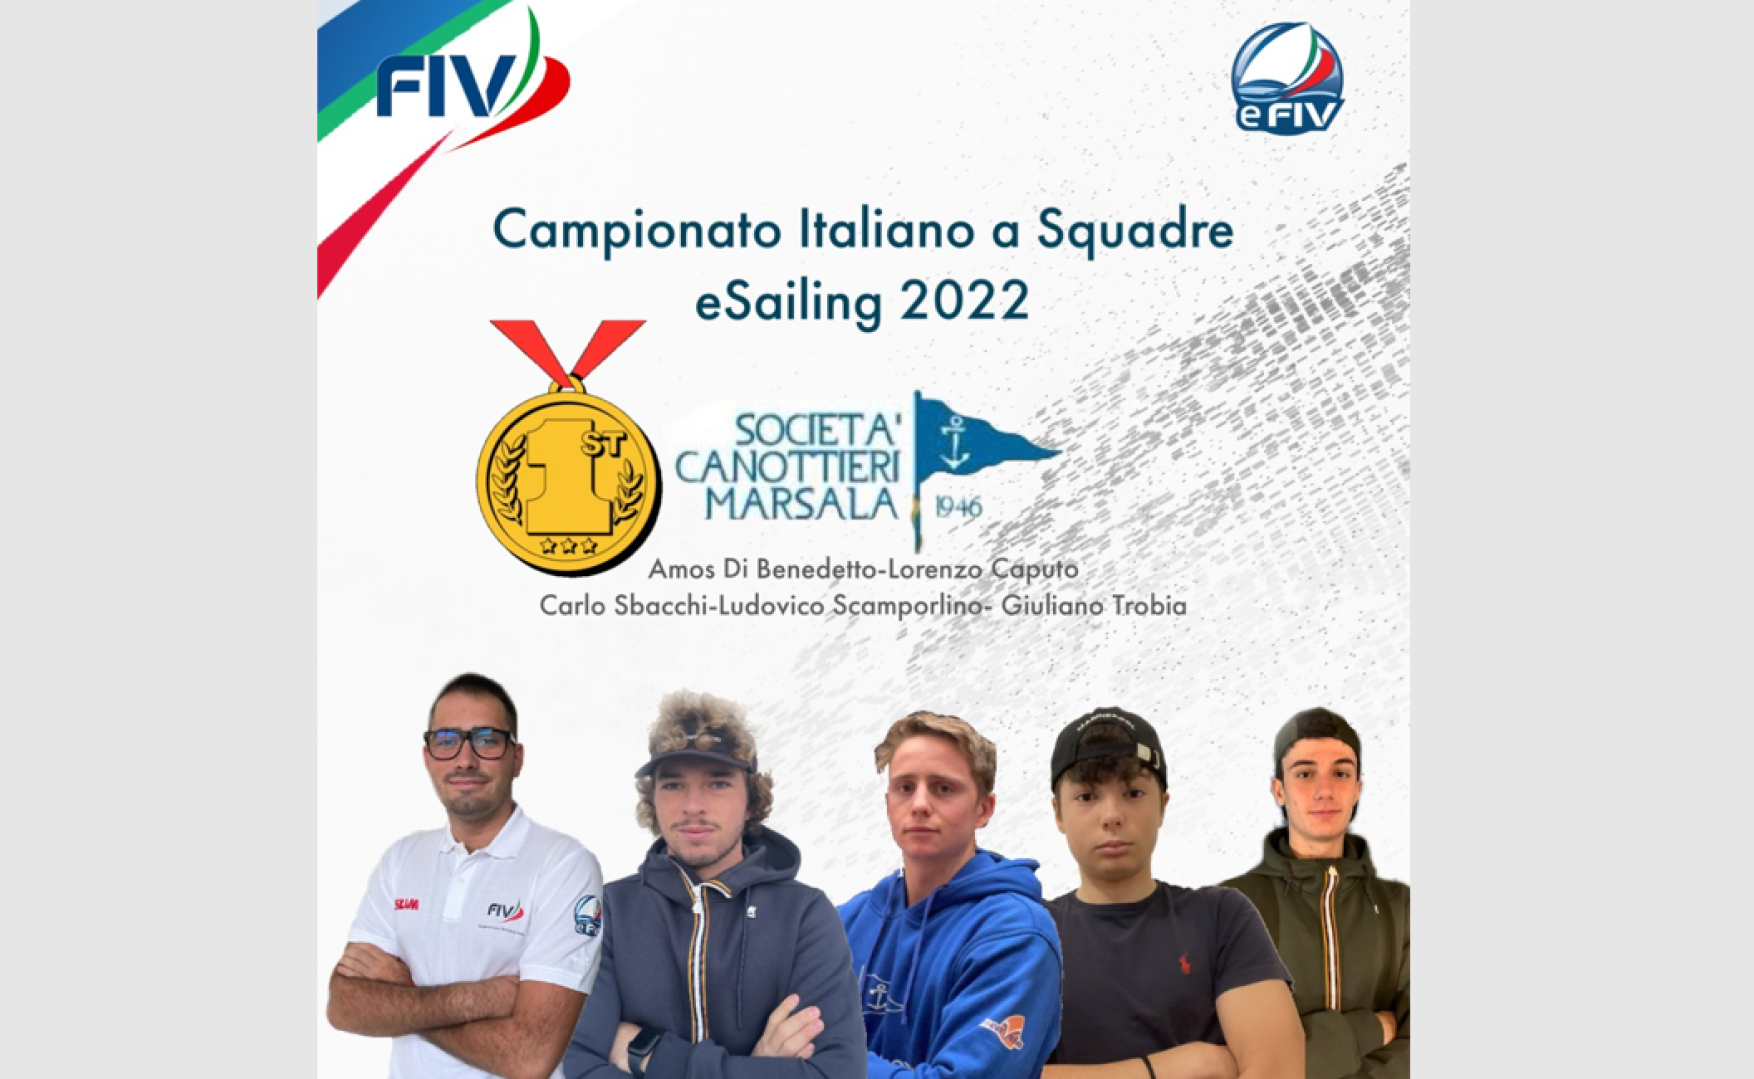 Campionato Italiano eSailing a Squadre di club FIV 2022